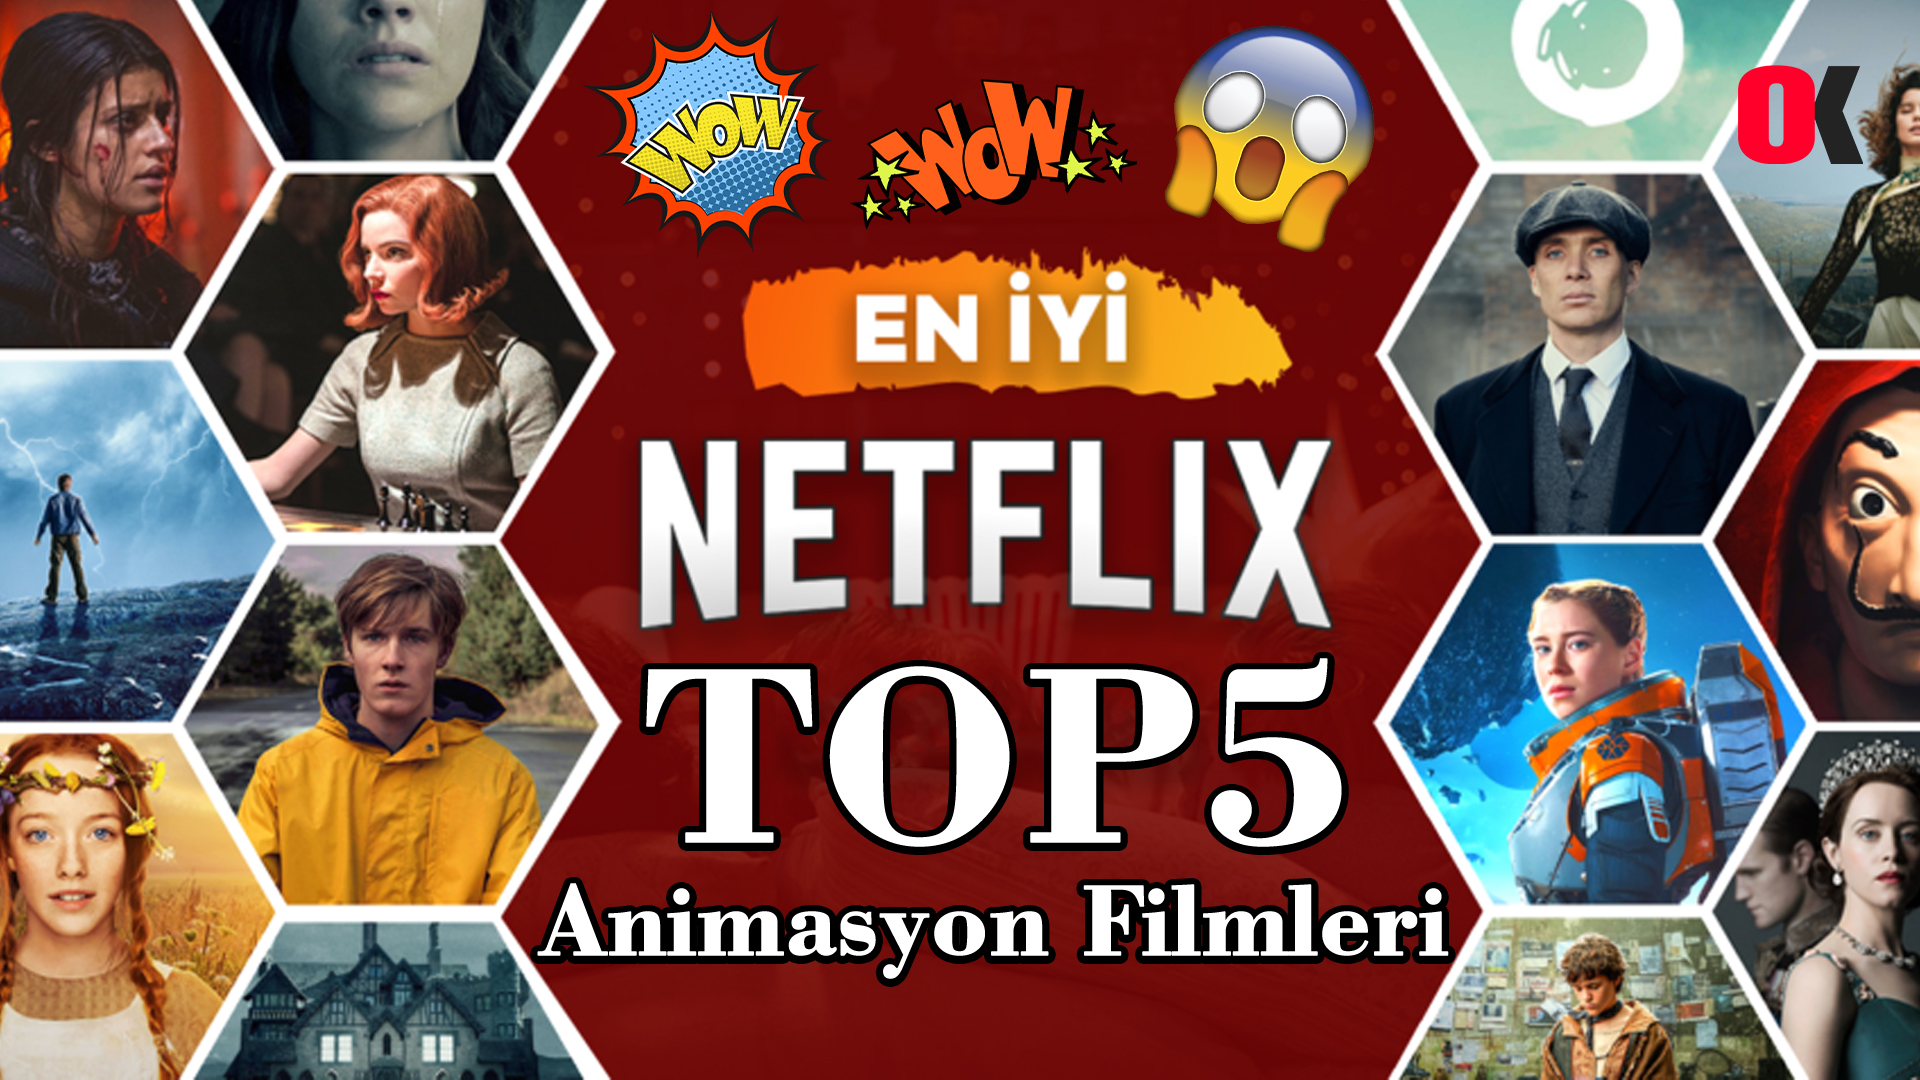 Netflix Animasyon Filmleri mi Arıyorsunuz? İşte En İyi 5 Animasyon Filmi